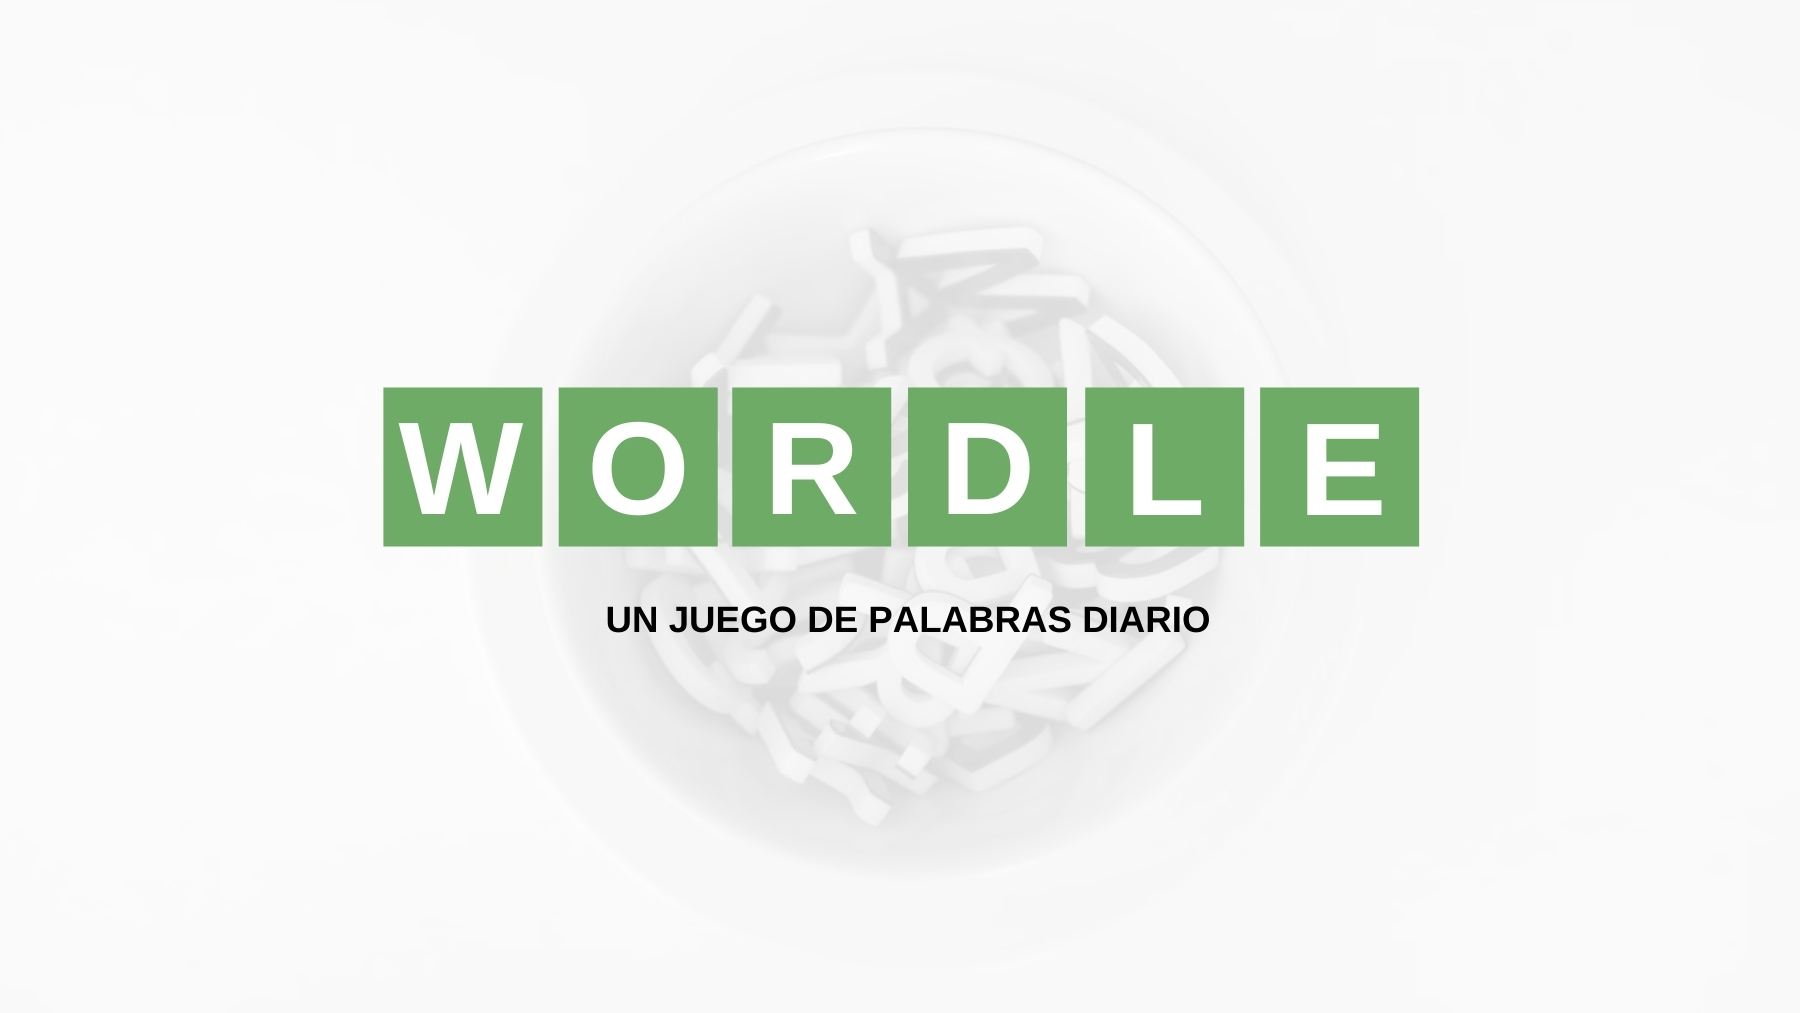 Solución palabra Wordle español, científico y con tildes hoy, martes 12 de julio de 2022